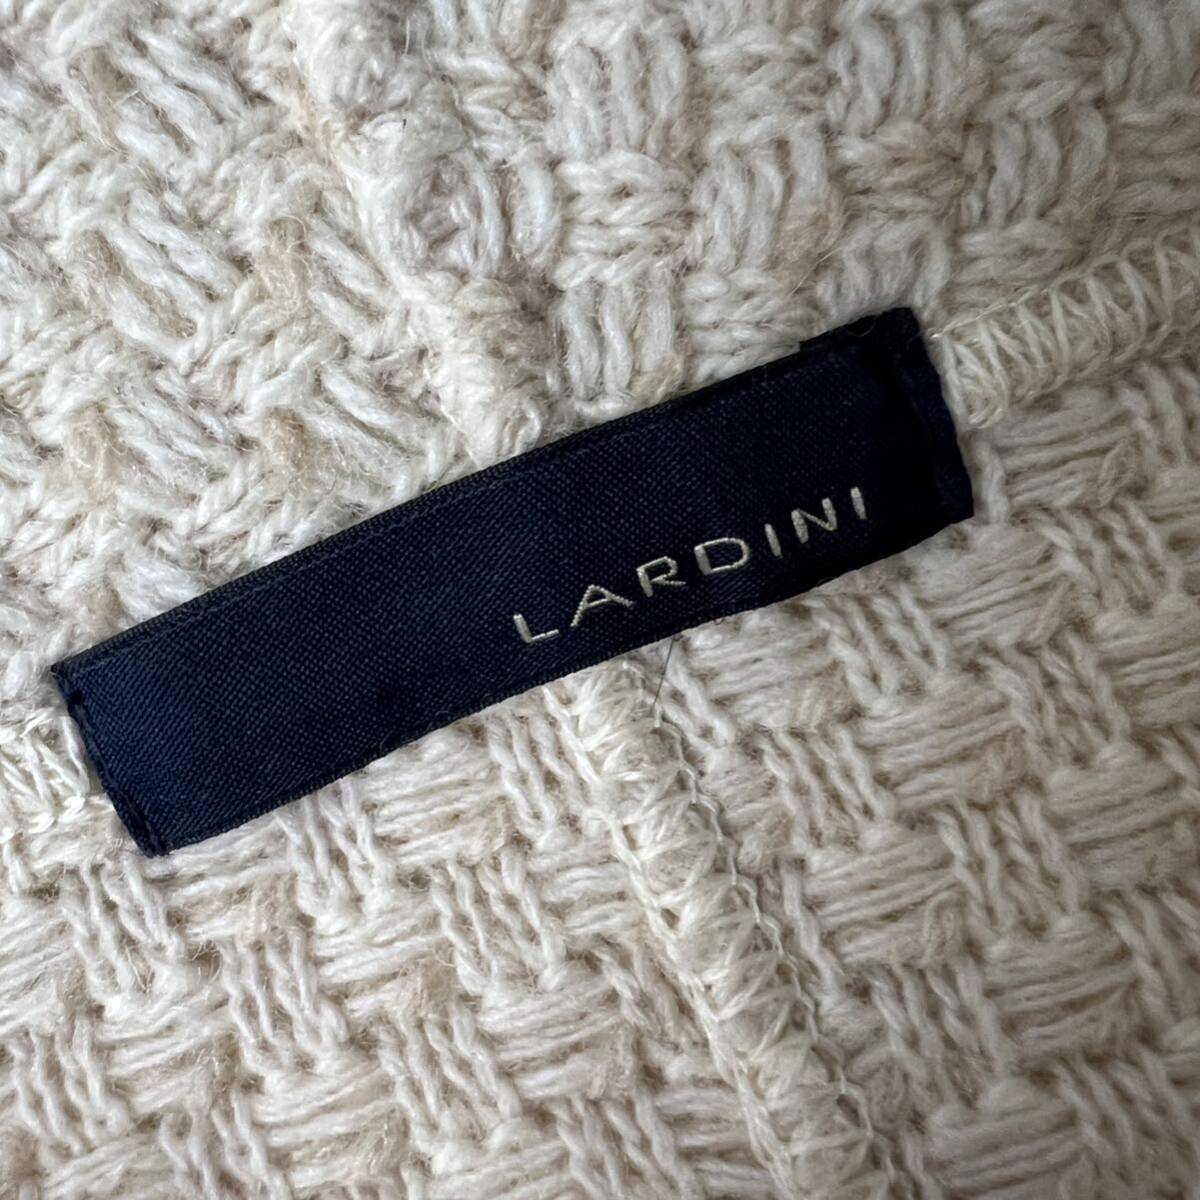 B16 Lardini [ один .. товар .] серебряный кнопка вязаный выполненный в строгом стиле Anne темно синий жакет шаль цвет шерсть белый M LARDINI Италия производства 